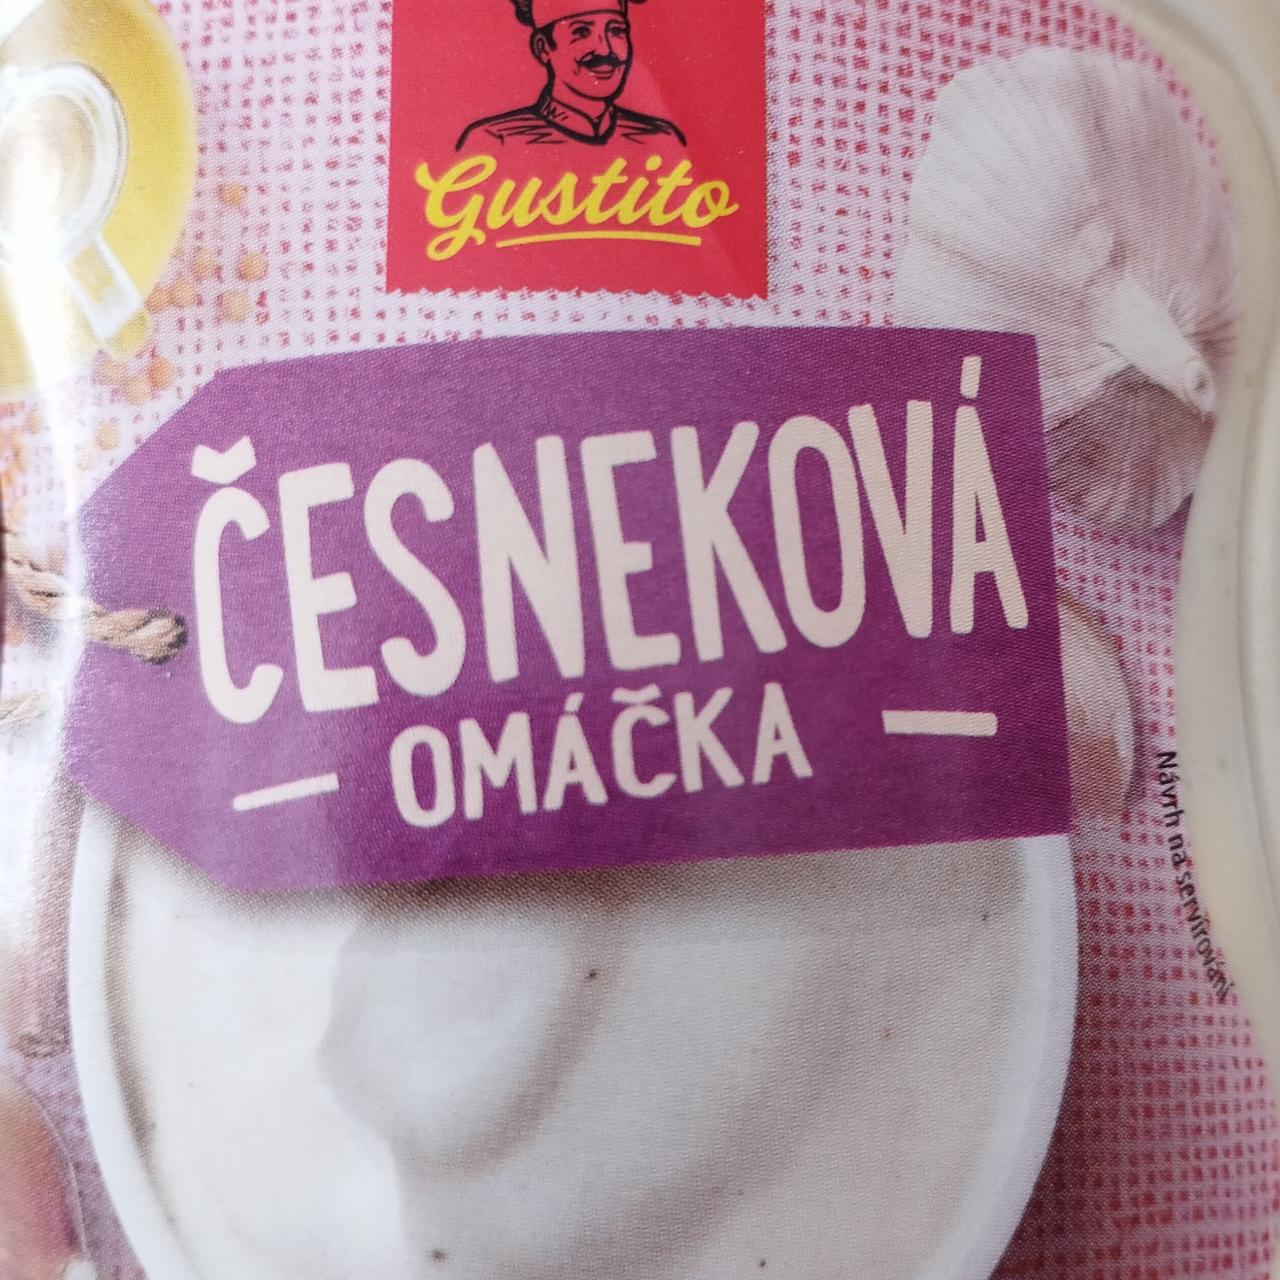 Fotografie - Česneková omáčka Gustito